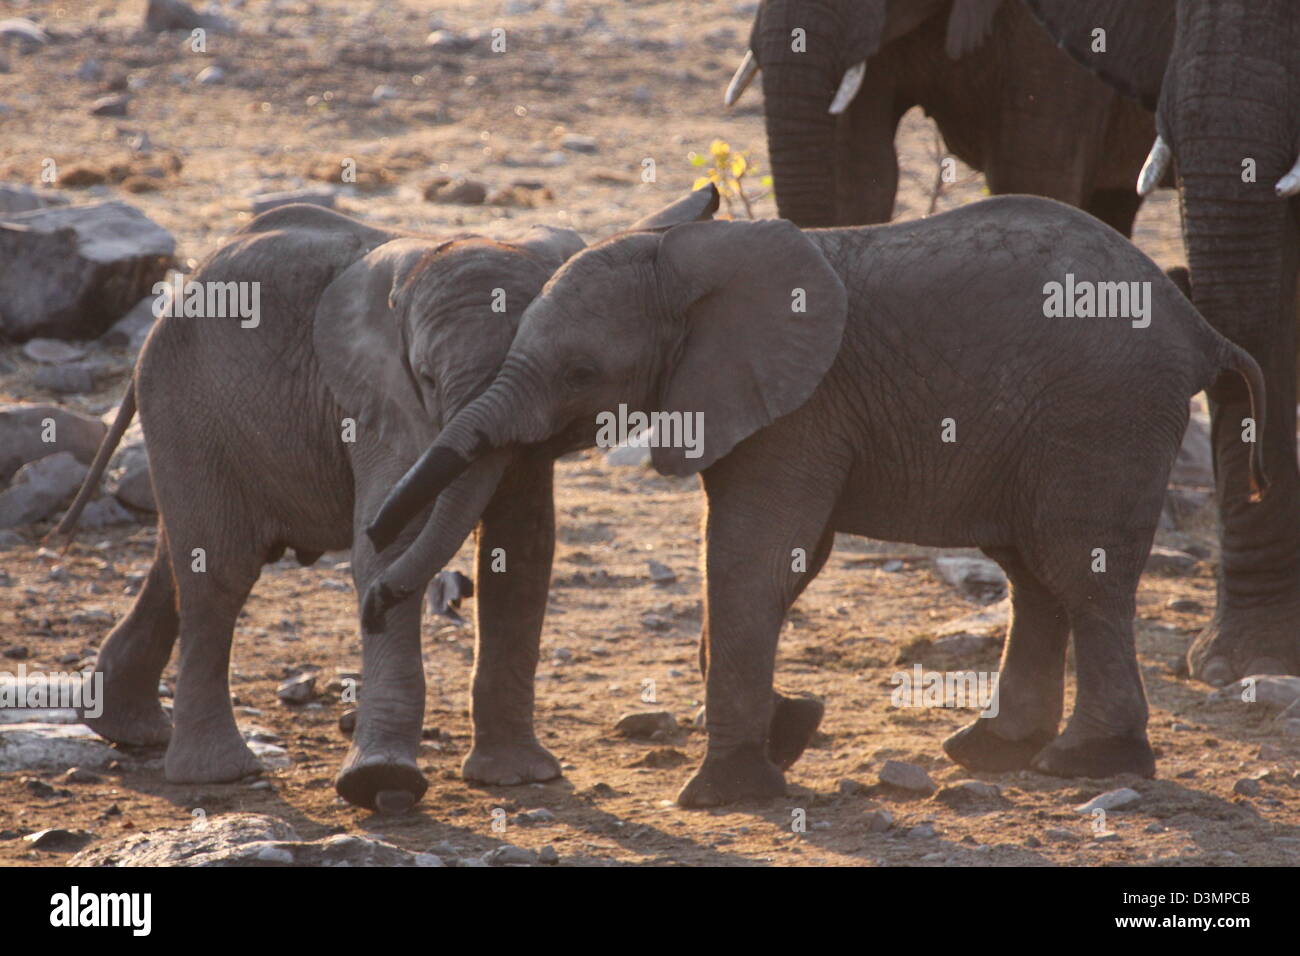 Young elephants at play Etosha National Park, Namibia Stock Photo